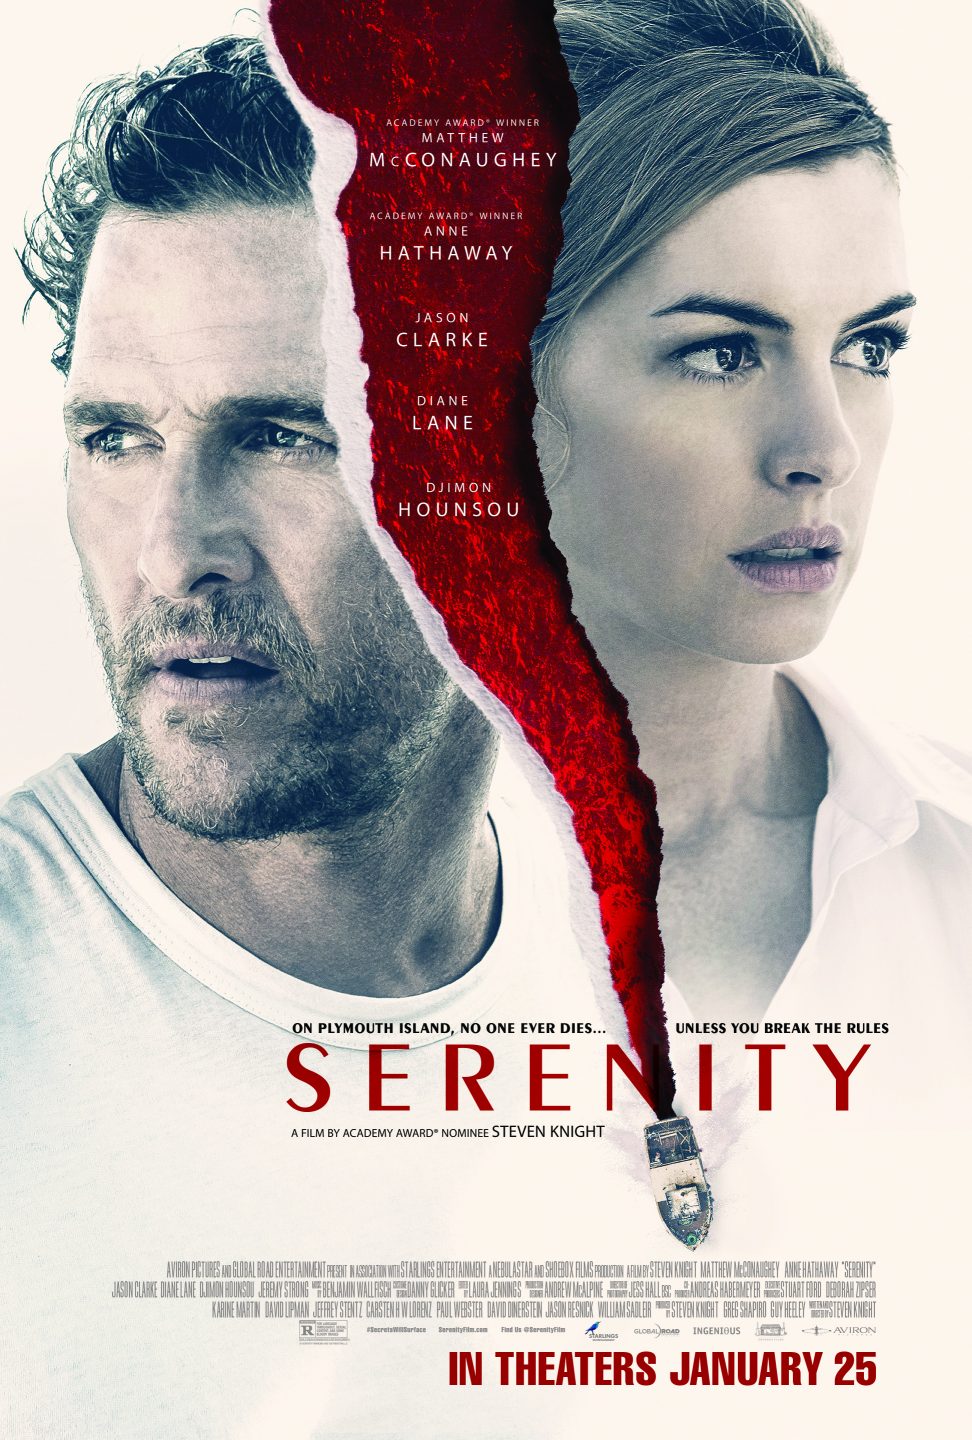 Serenity poster (Aviron)